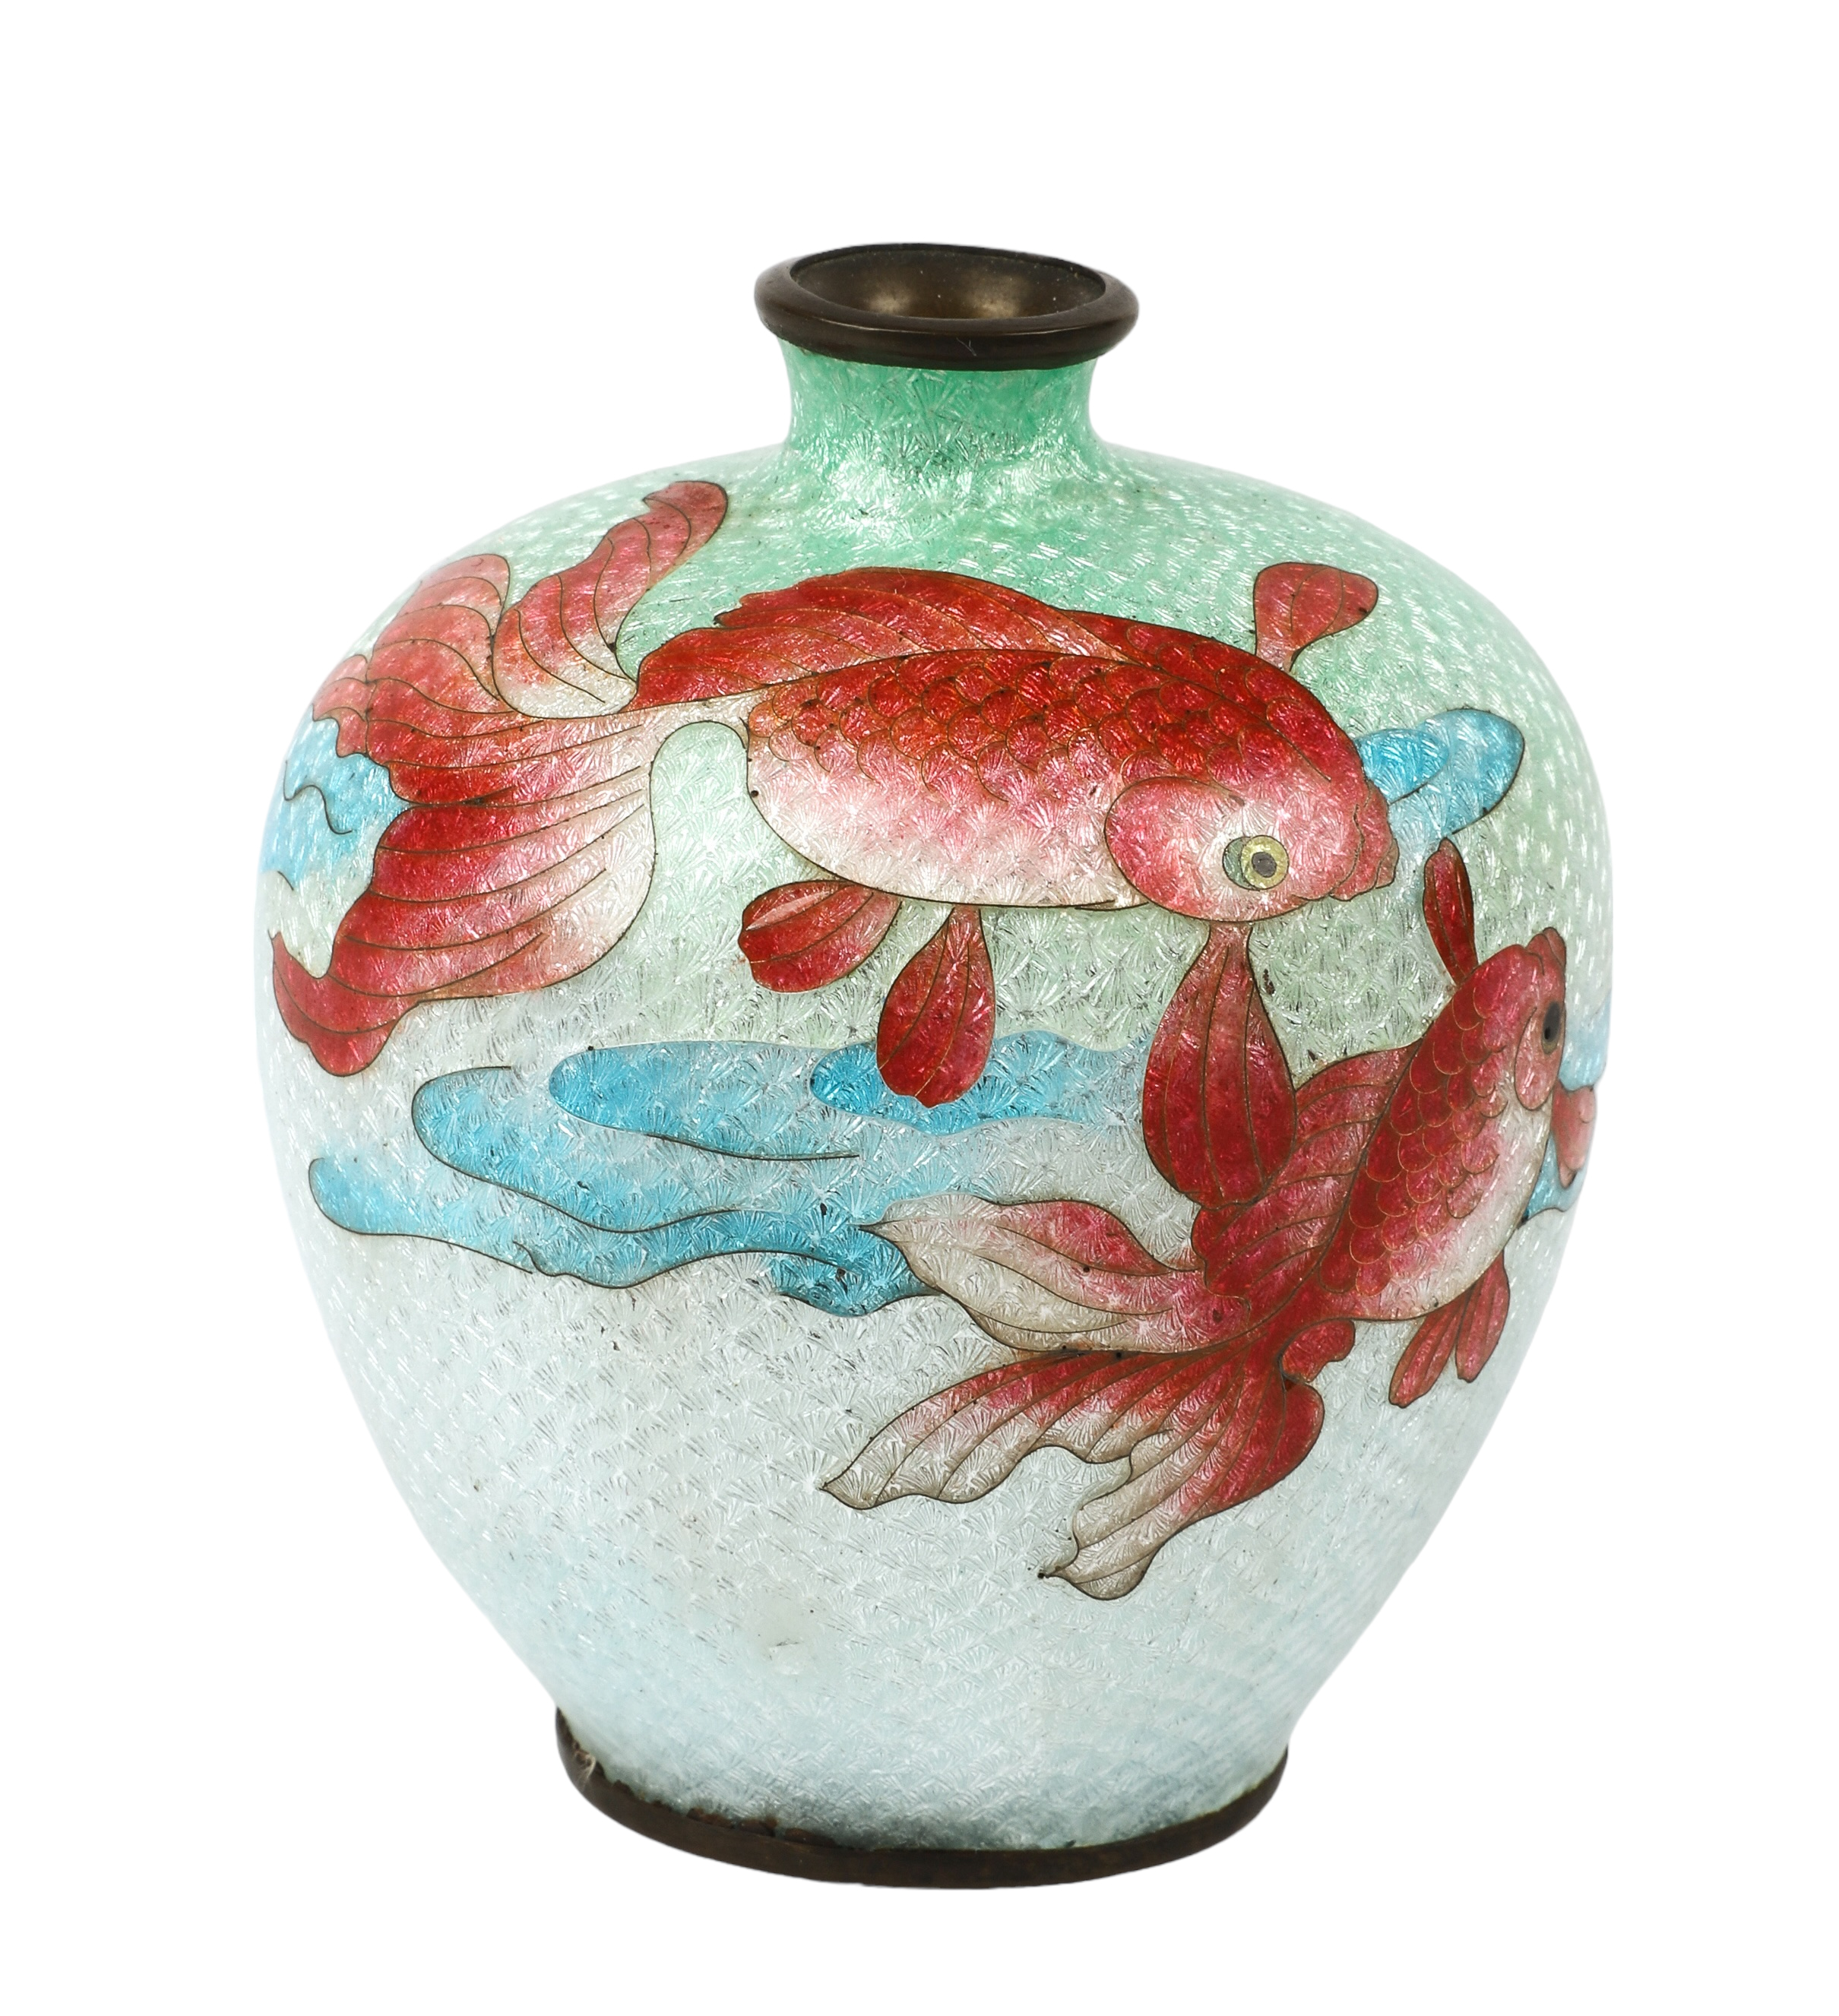 Japanese ginbari cloisonne vase  3b1c5b